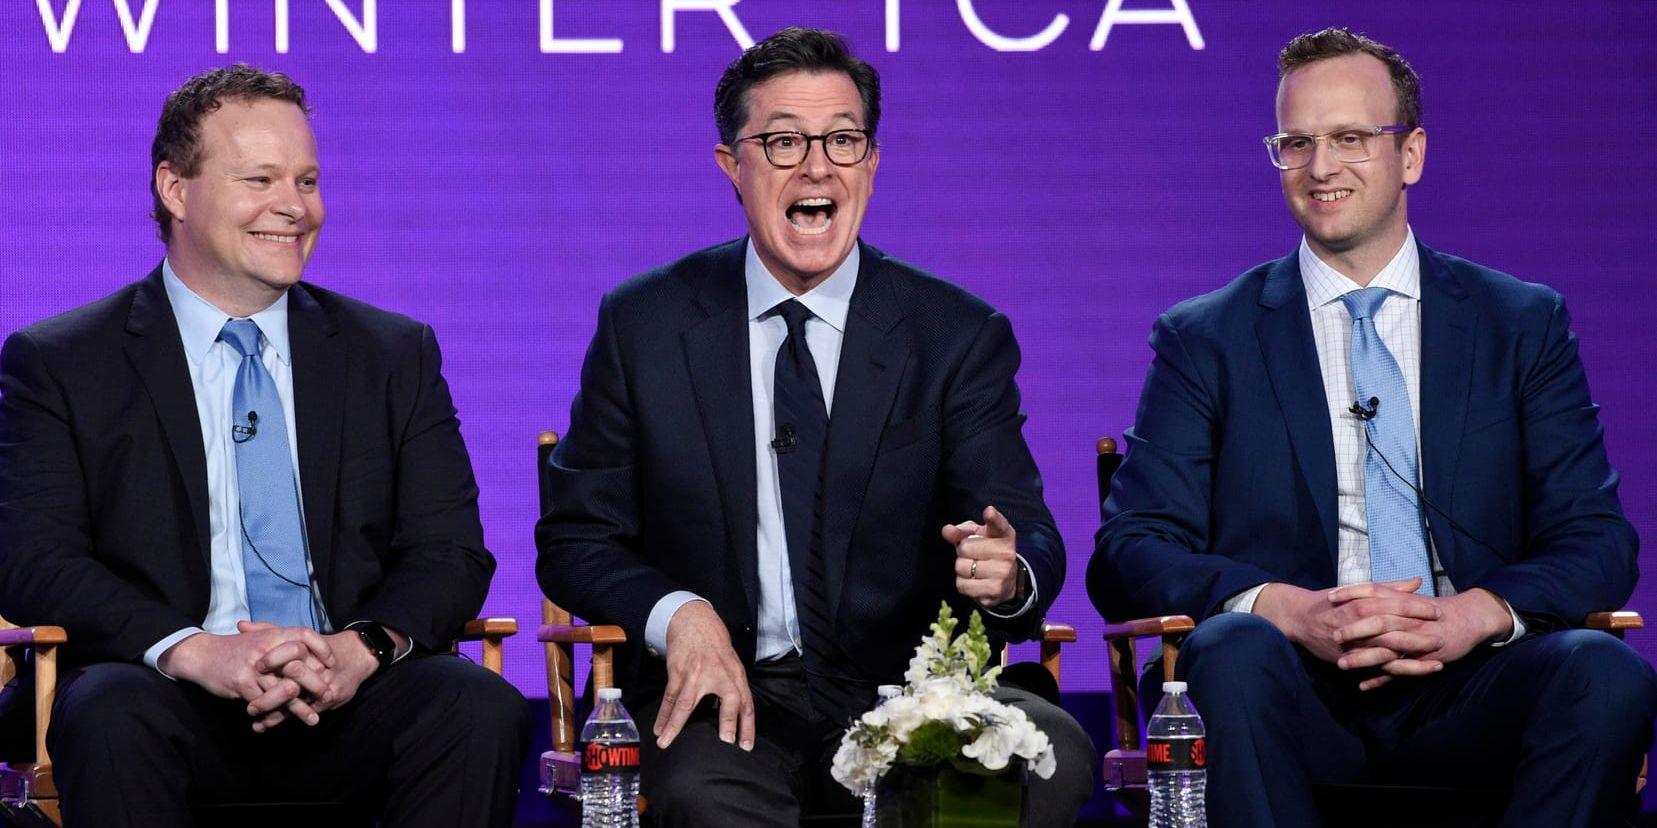 Stephen Colbert producerar den animerade serien "Our cartoon president", som nu får en andra säsong. Arkivbild.